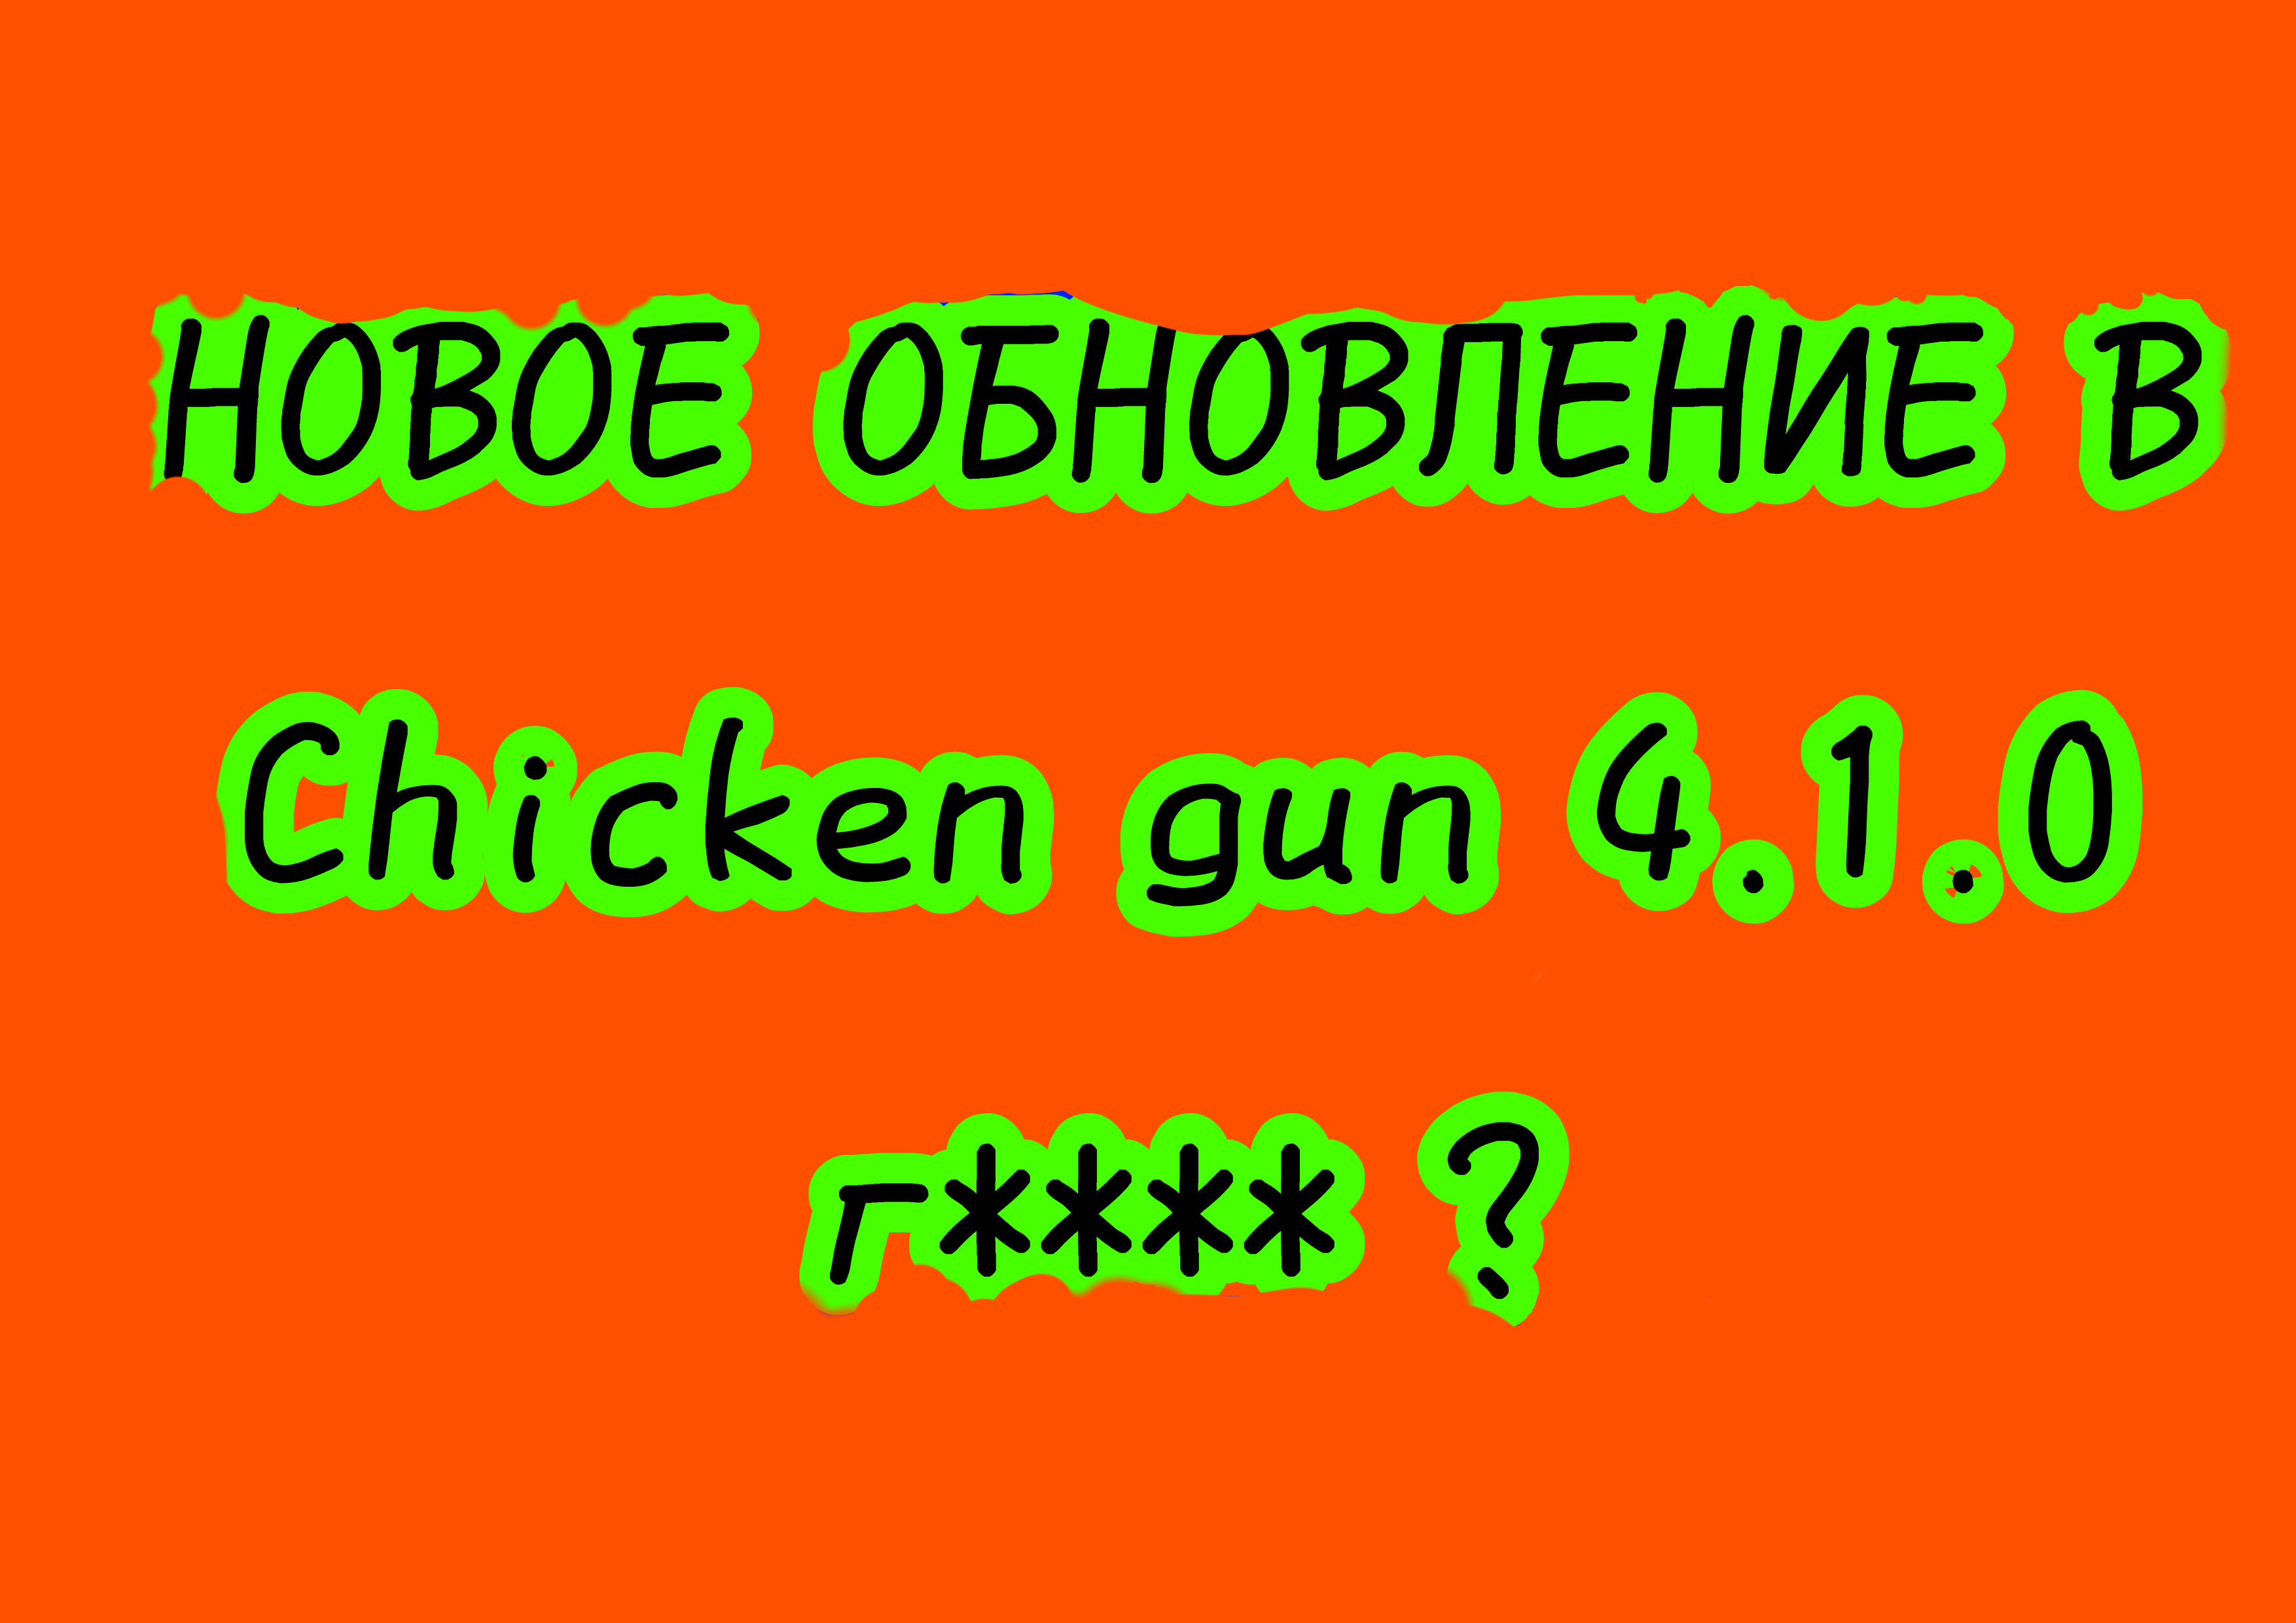 НОВОЕ ОБНОВЛЕНИЕ В Chicken Gun 4.1.0  г**** ?